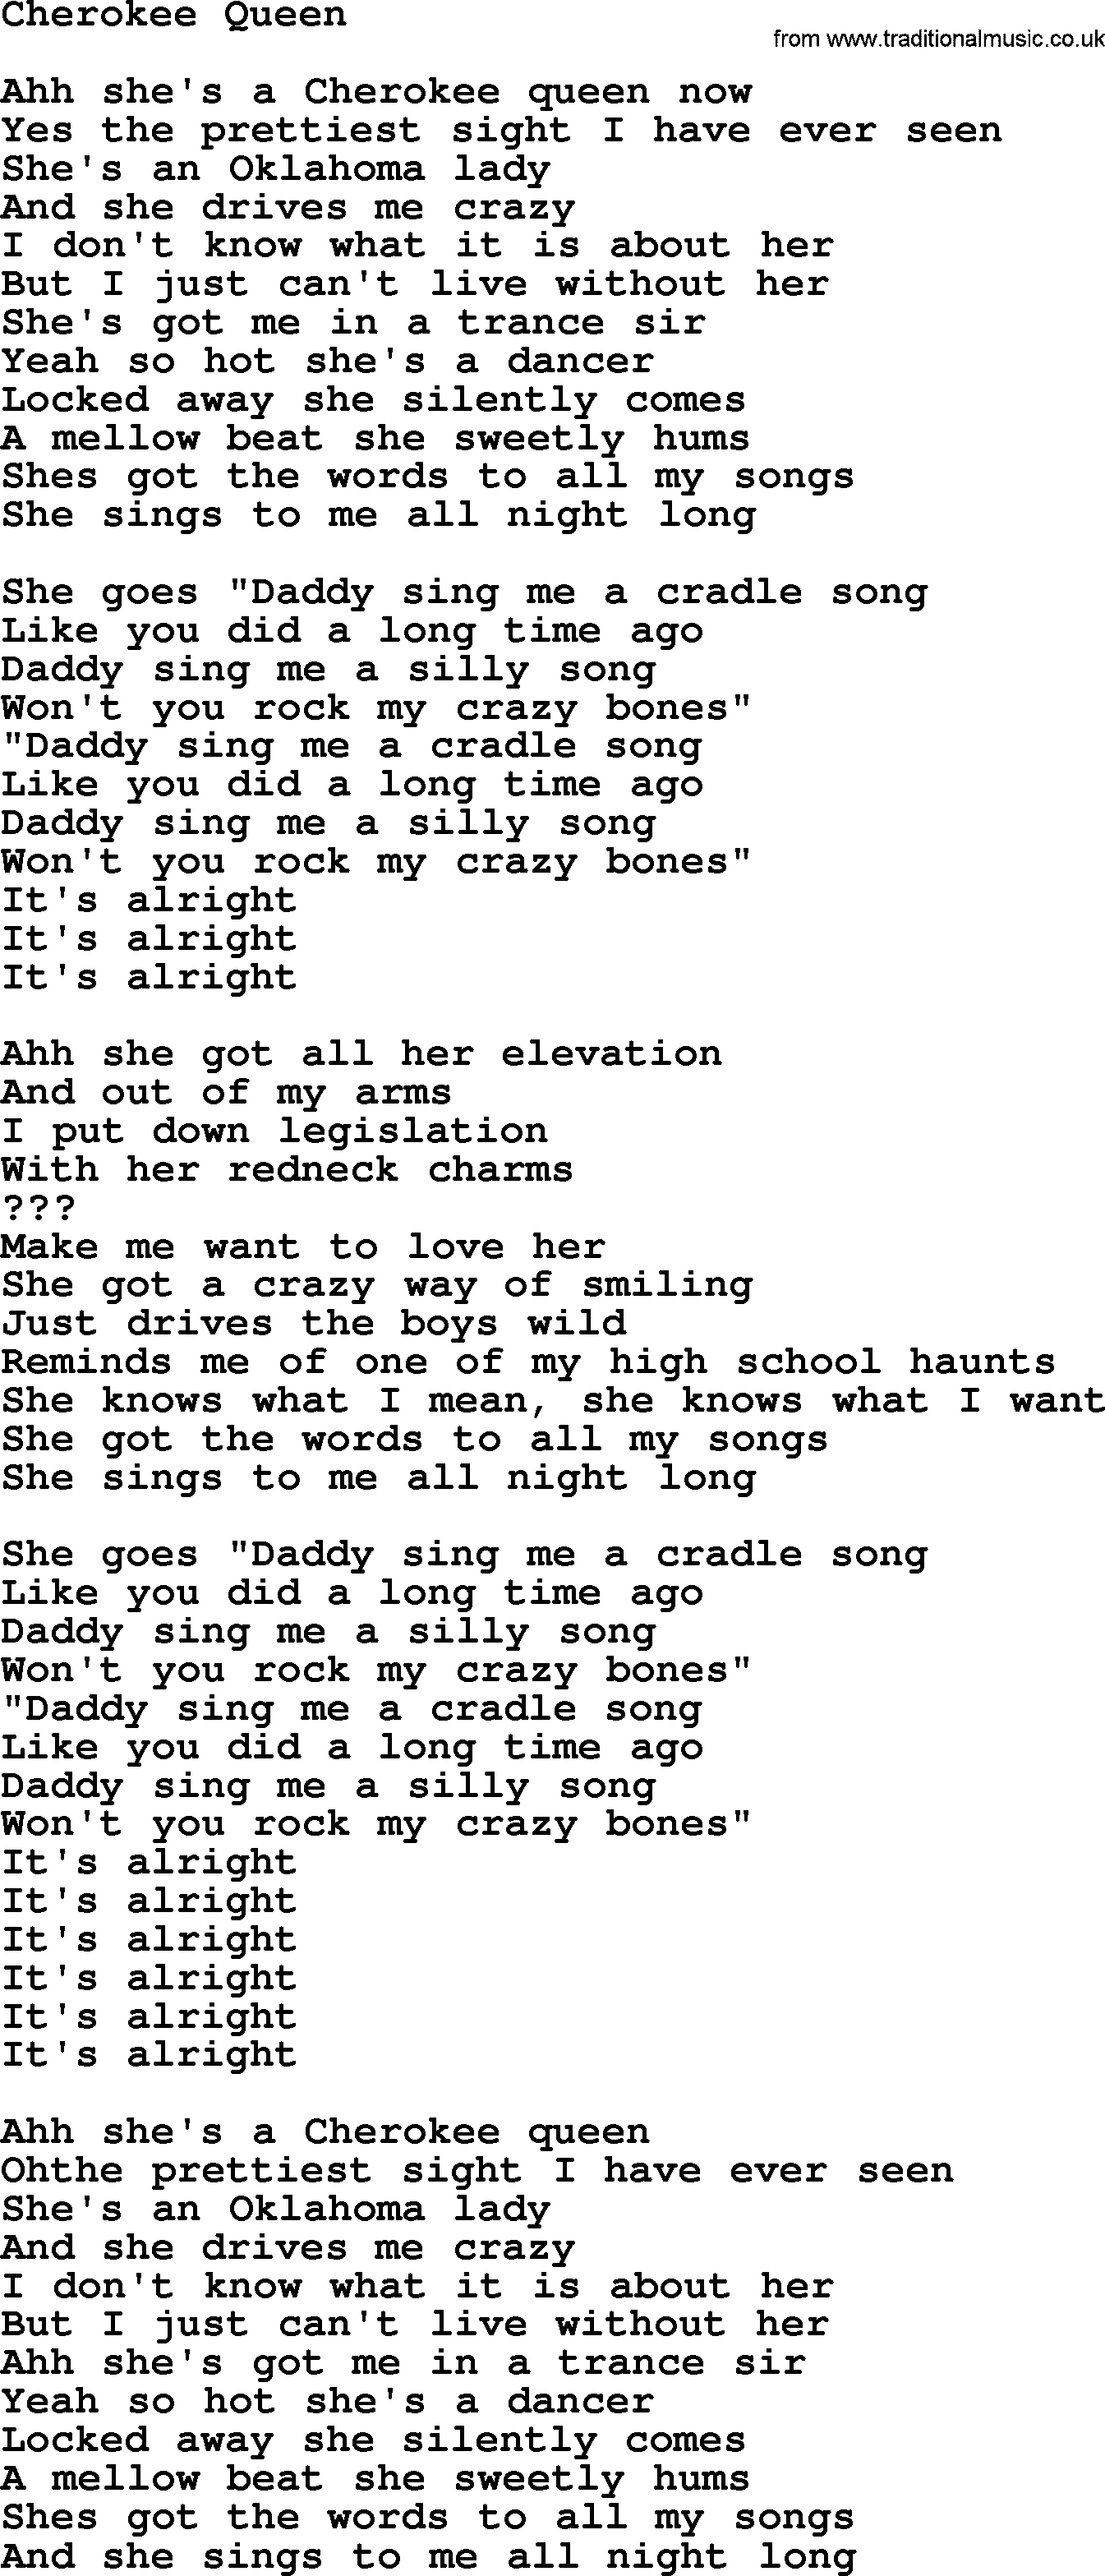 Bruce Springsteen song: Cherokee Queen lyrics